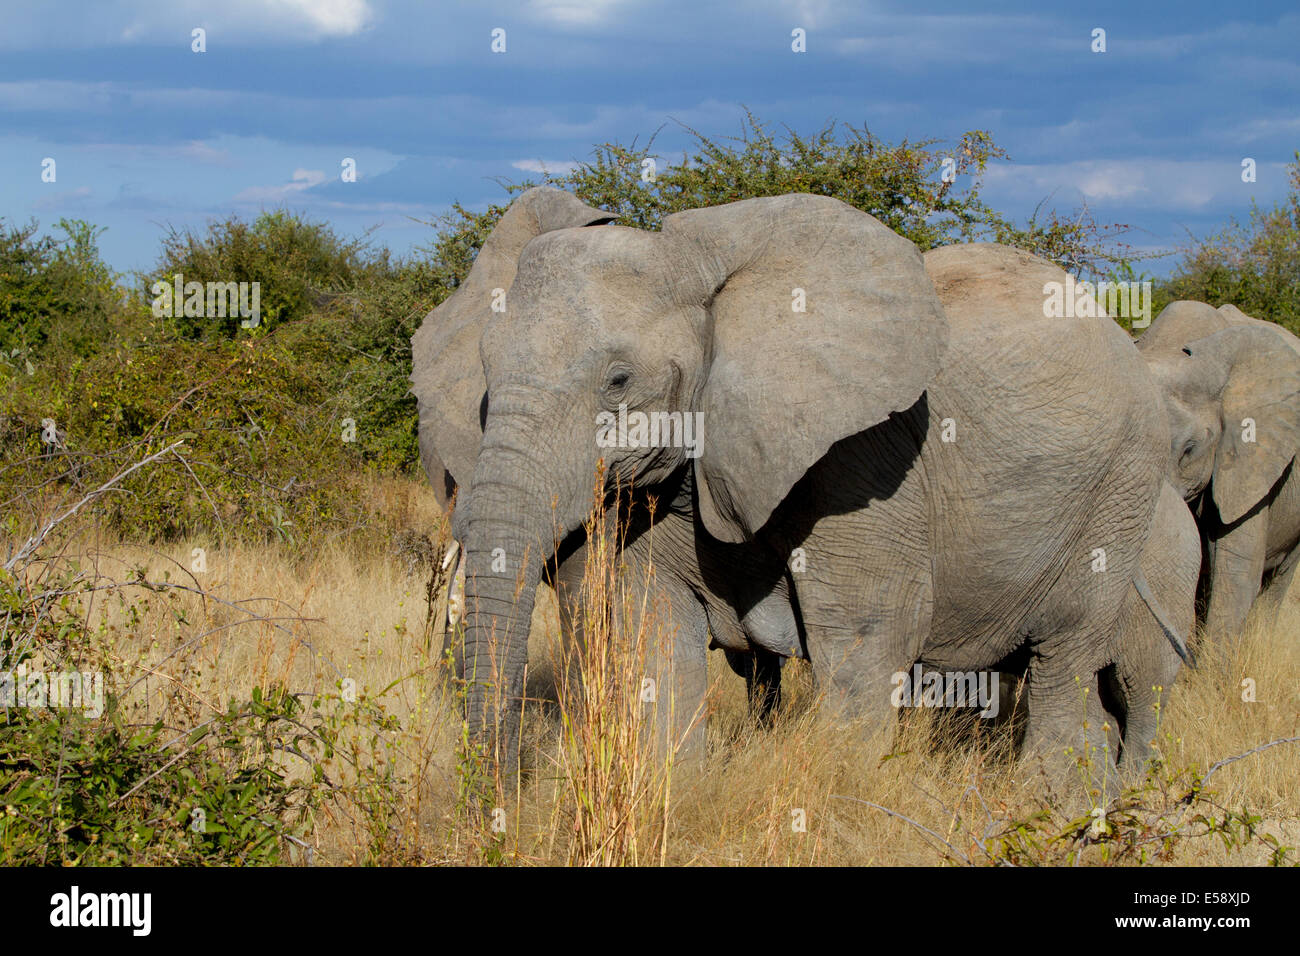 Elephants, Tanzania Stock Photo